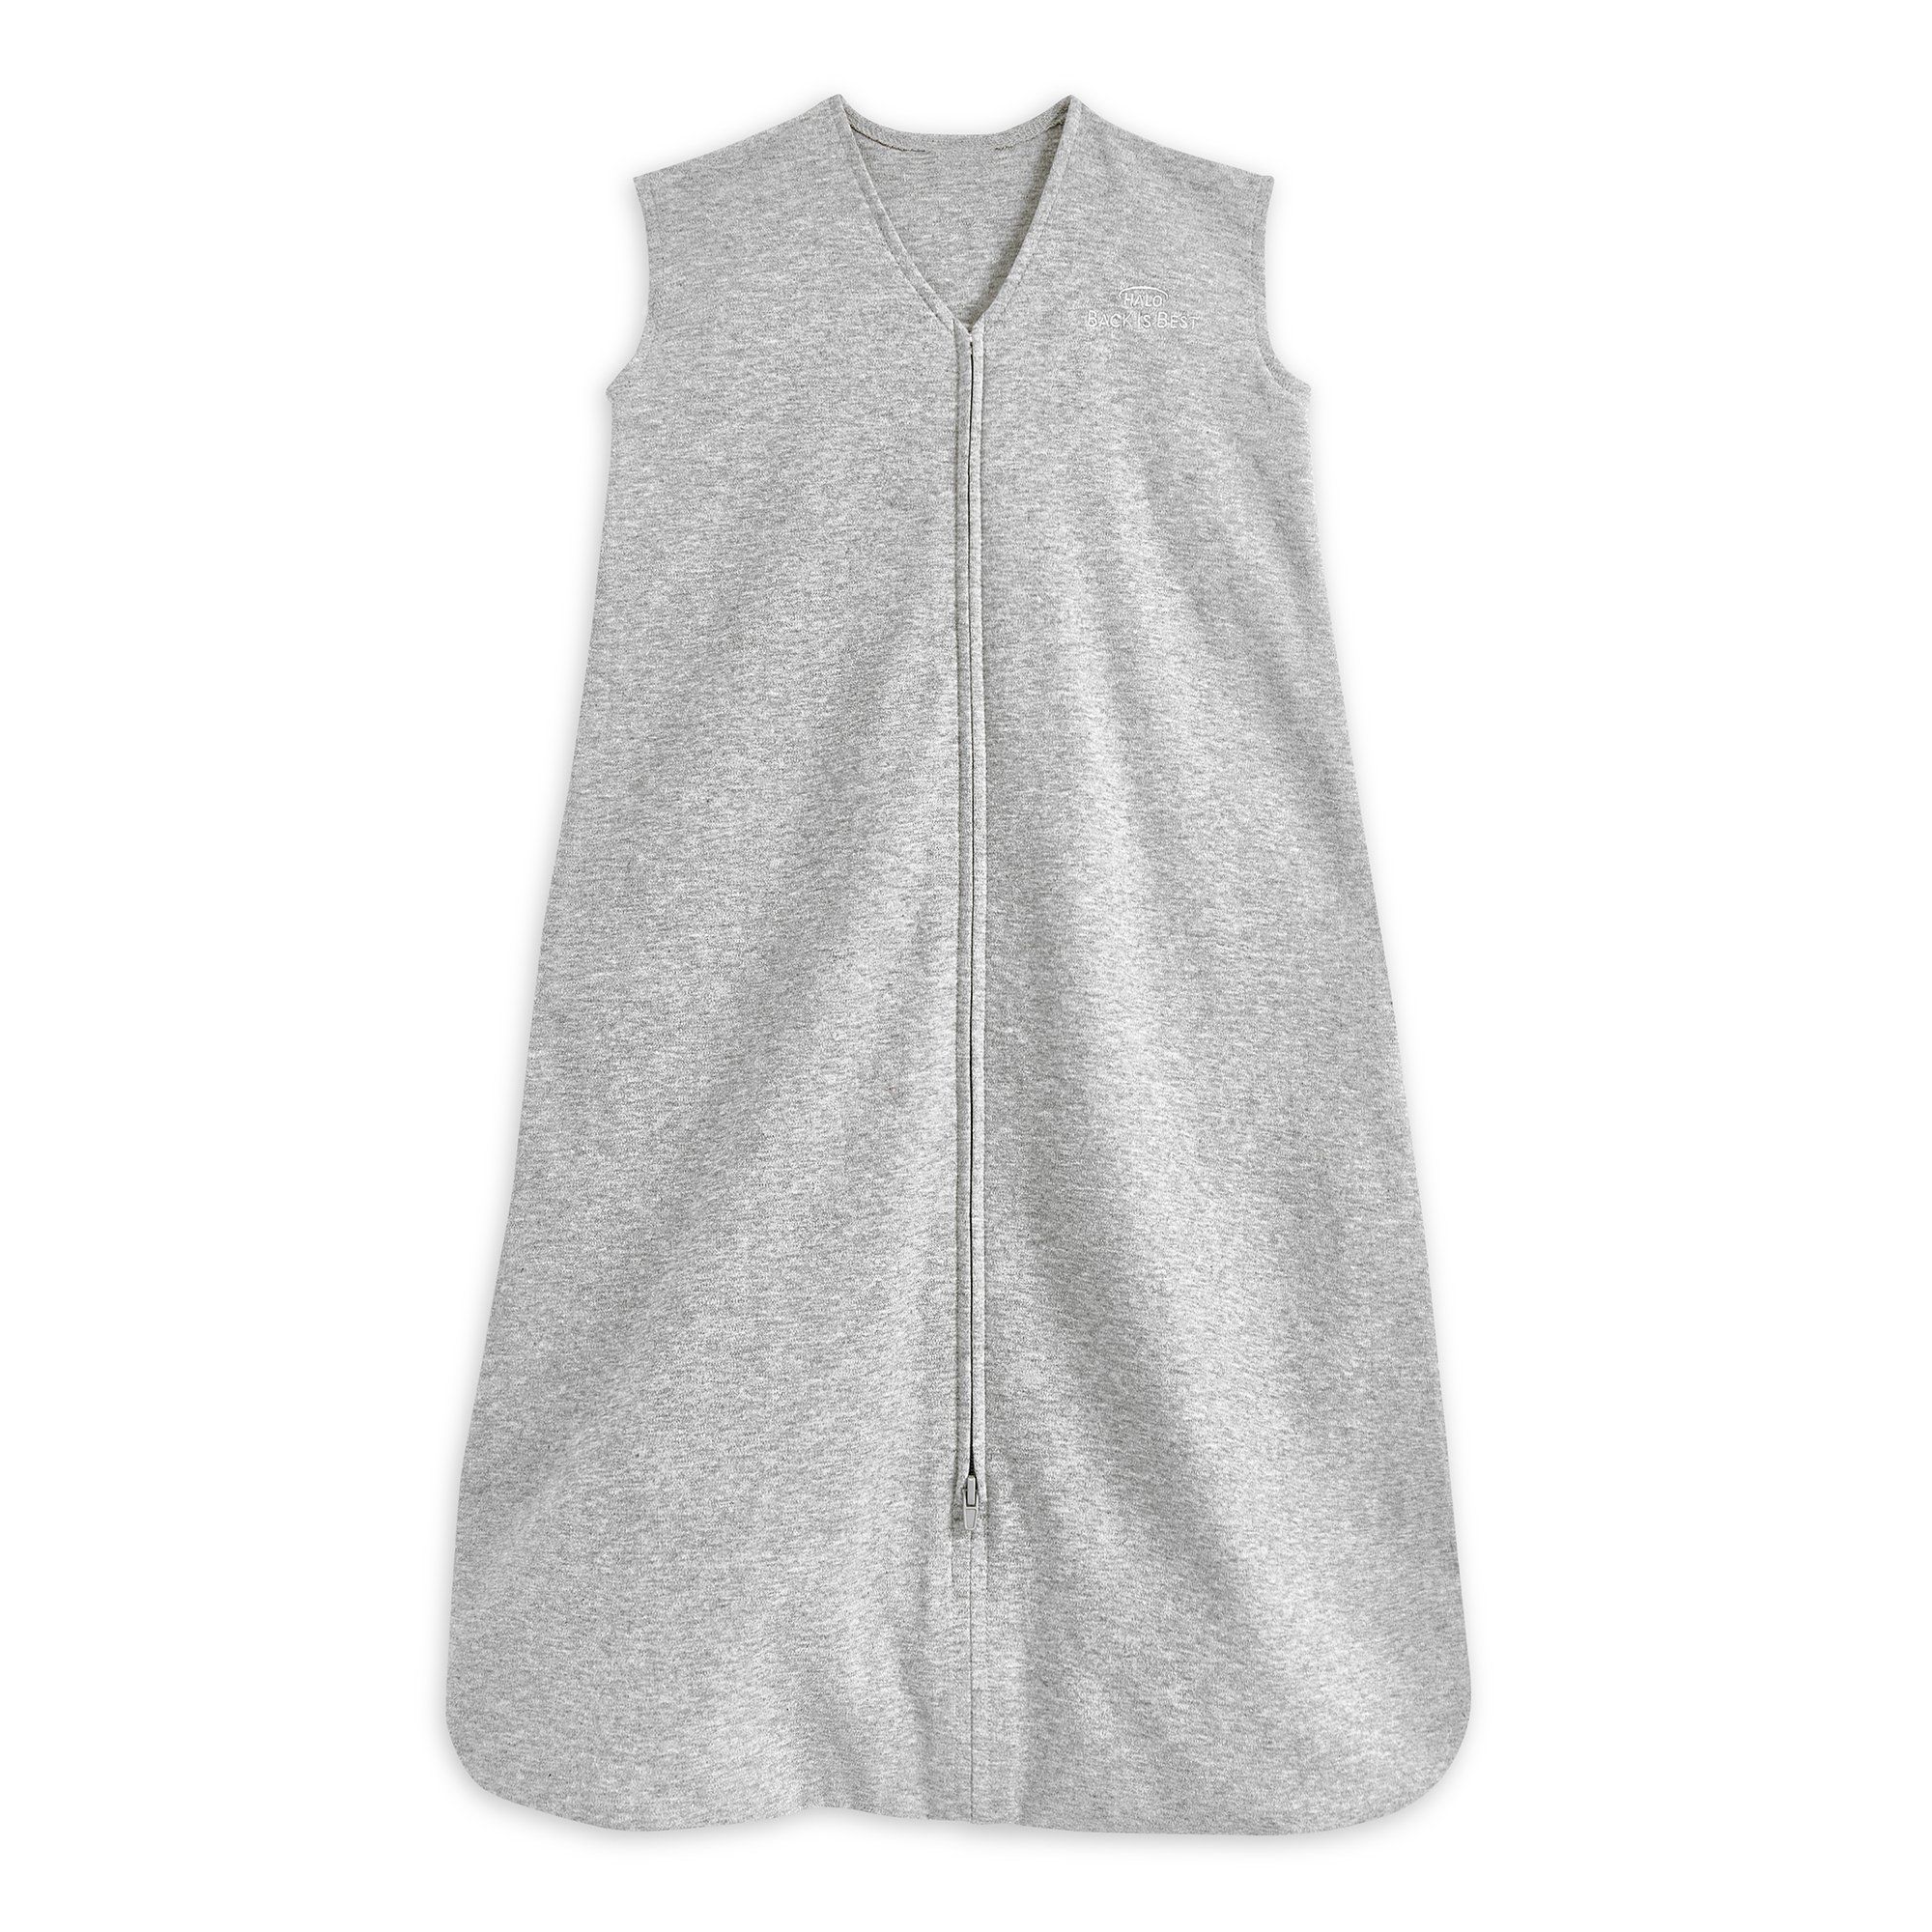 HALO SleepSack Wearable Blanket- Multiple Options